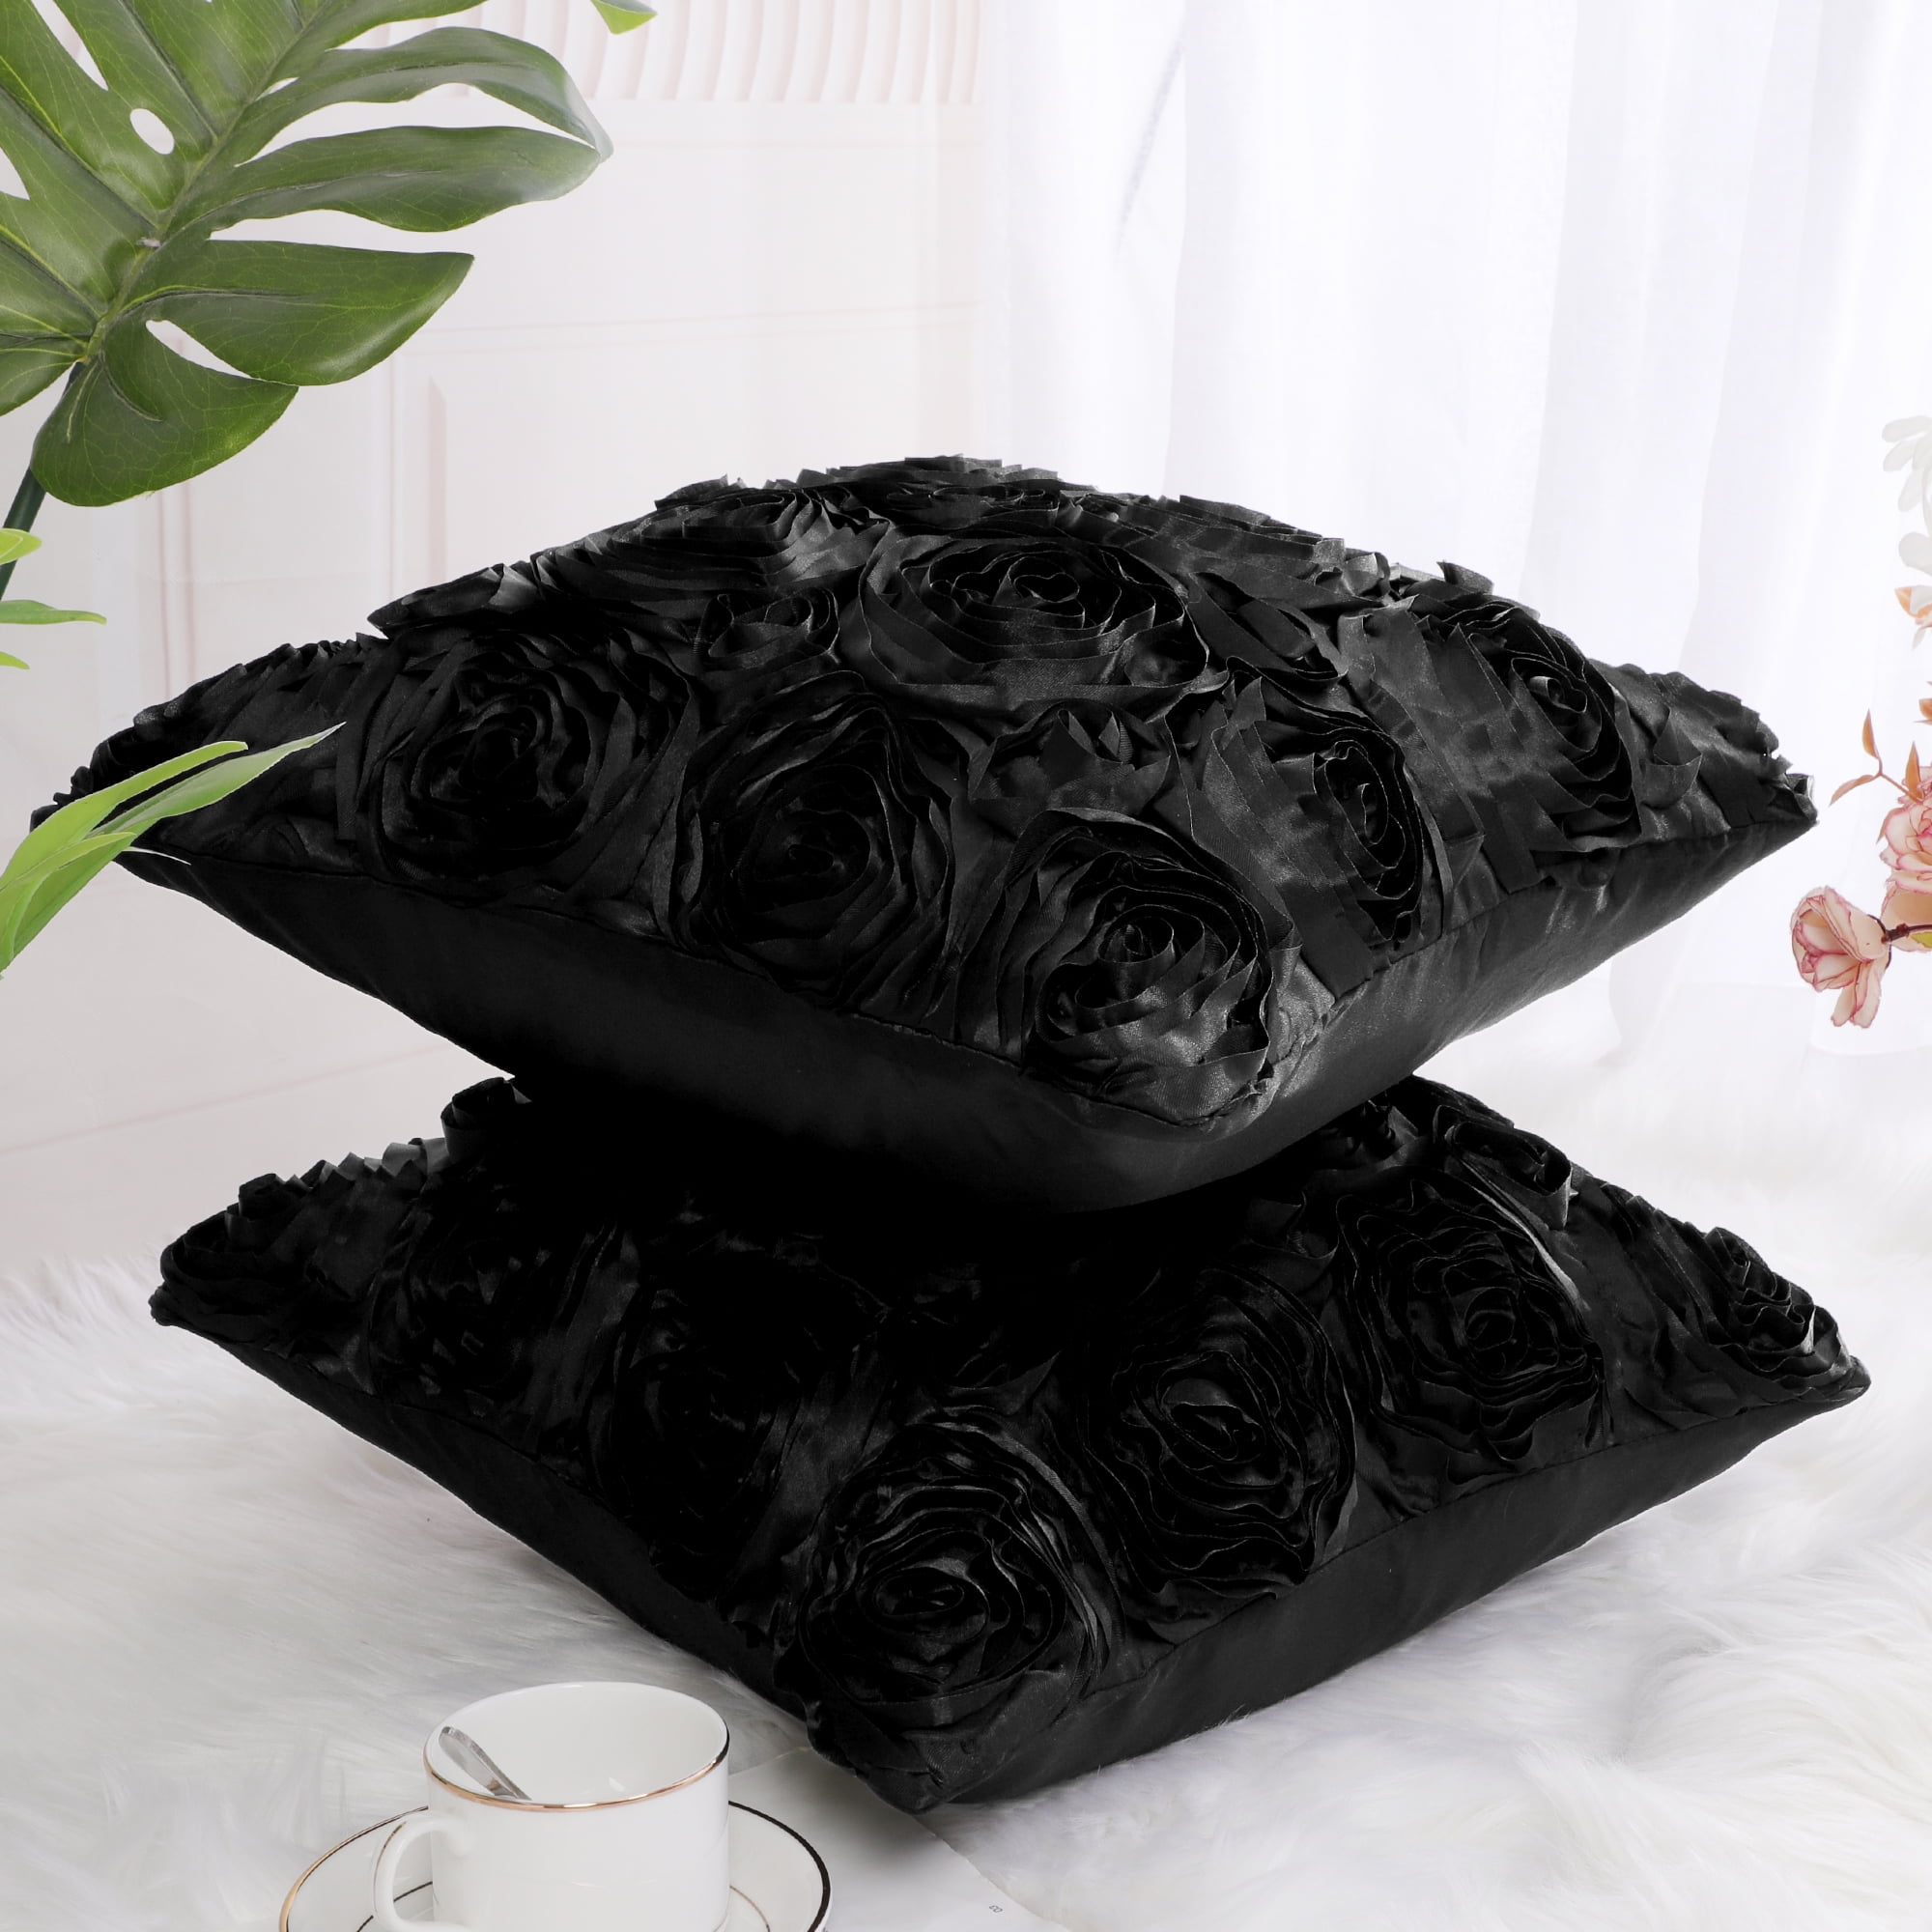 SMILING FLOWER HYPEBEAST MASK BLACK Pillowcase Polyester Linen Velvet  Creative Zip Decor Home Cushion Cover